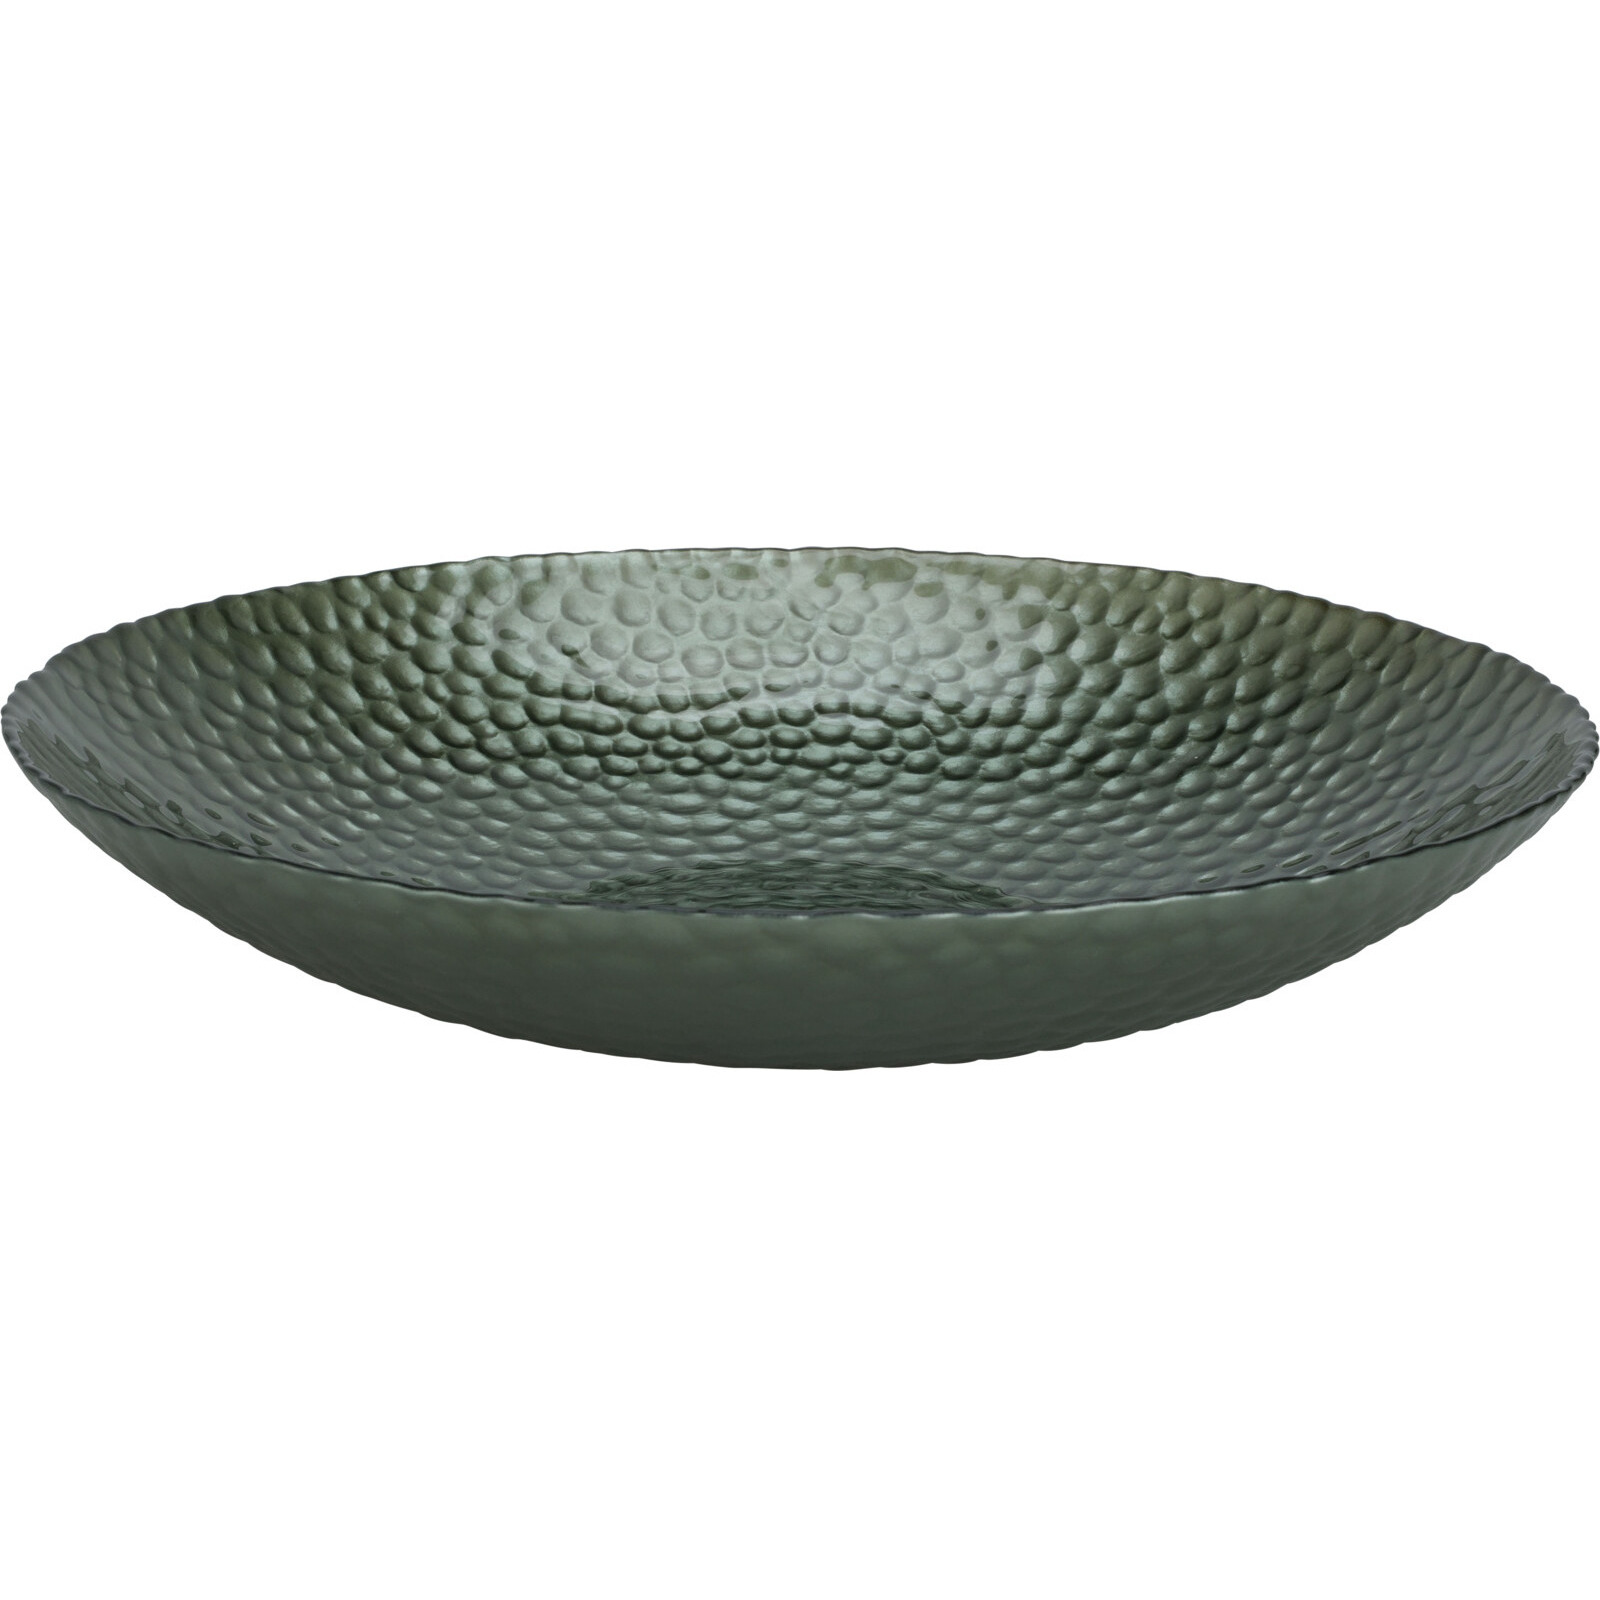 Merkloos Glazen decoratie schaal/fruitschaal groen rond D30 x H6 cm -